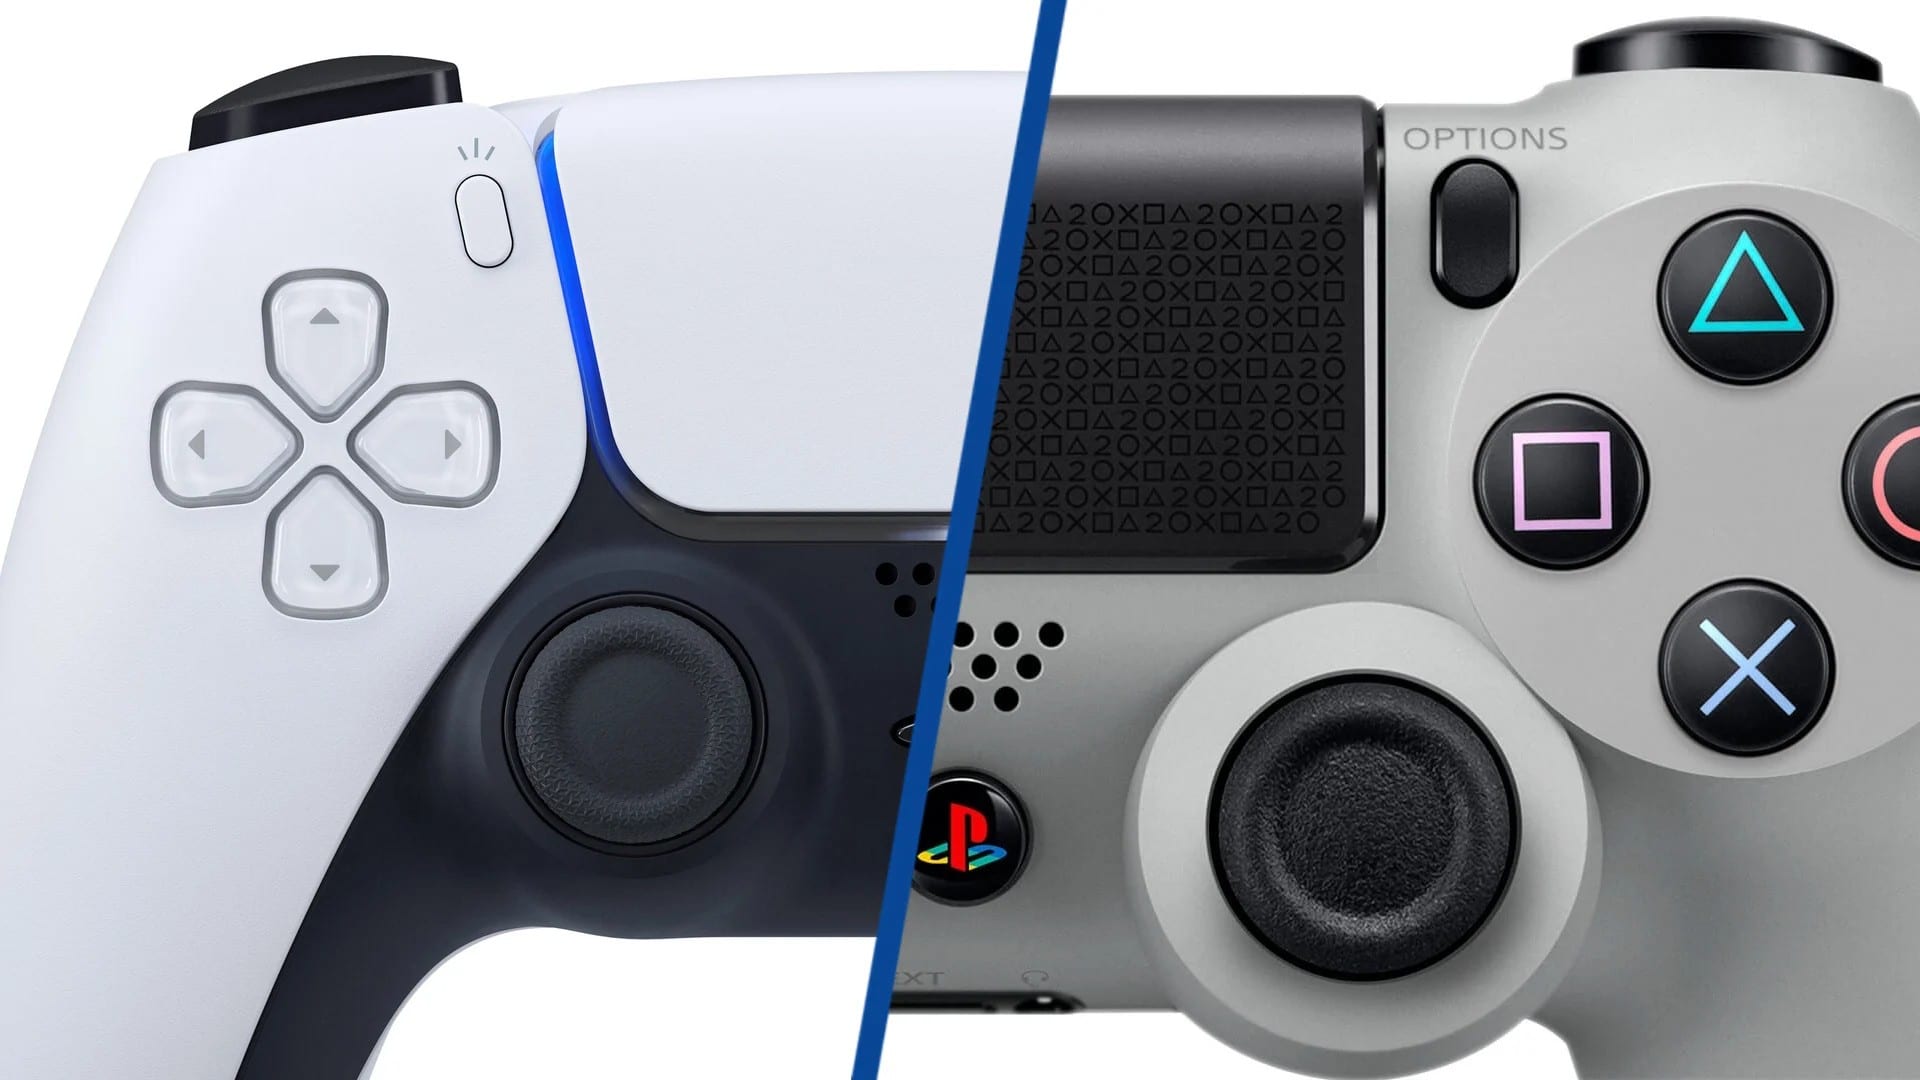 PS4 e PS5 terão multiplayer gratuito neste fim de semana